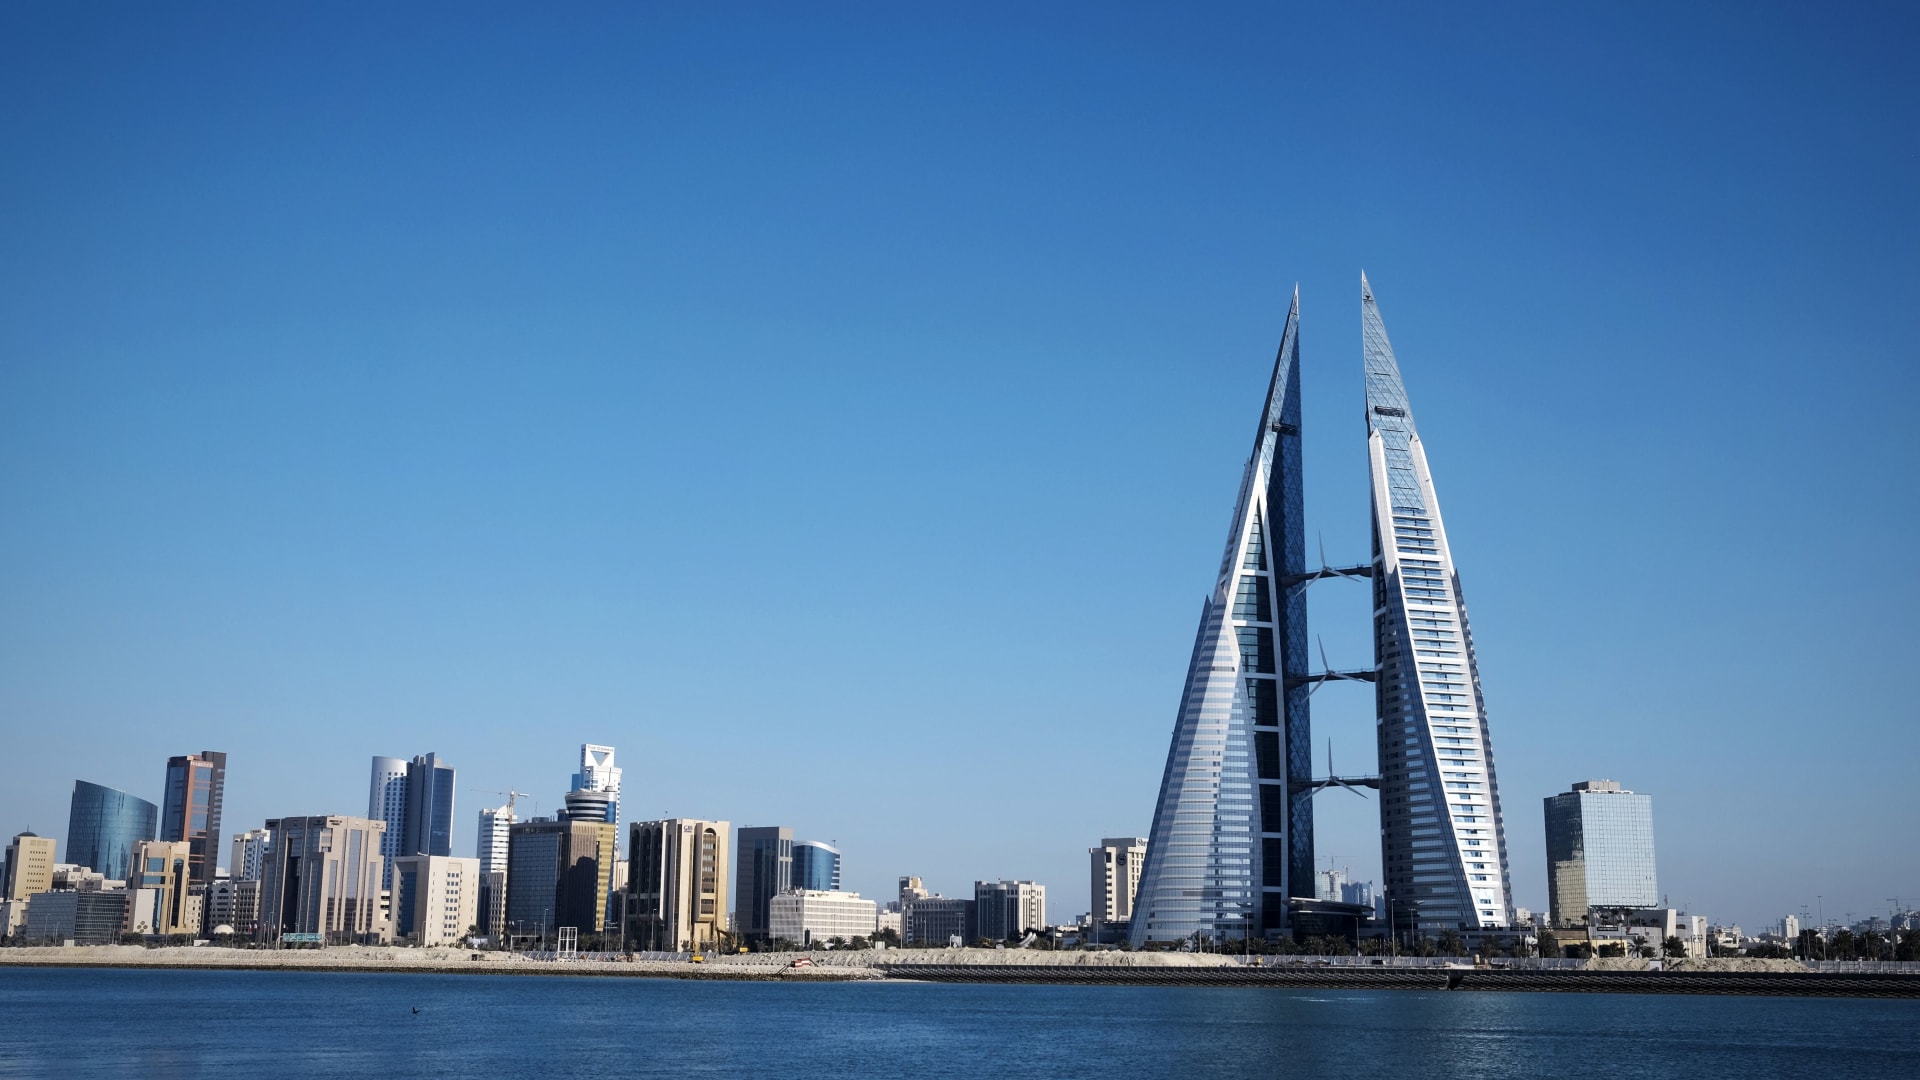 نواب البحرين يستعدون لبدء مقاضاة دولية لقطر مع طلب تعويضات